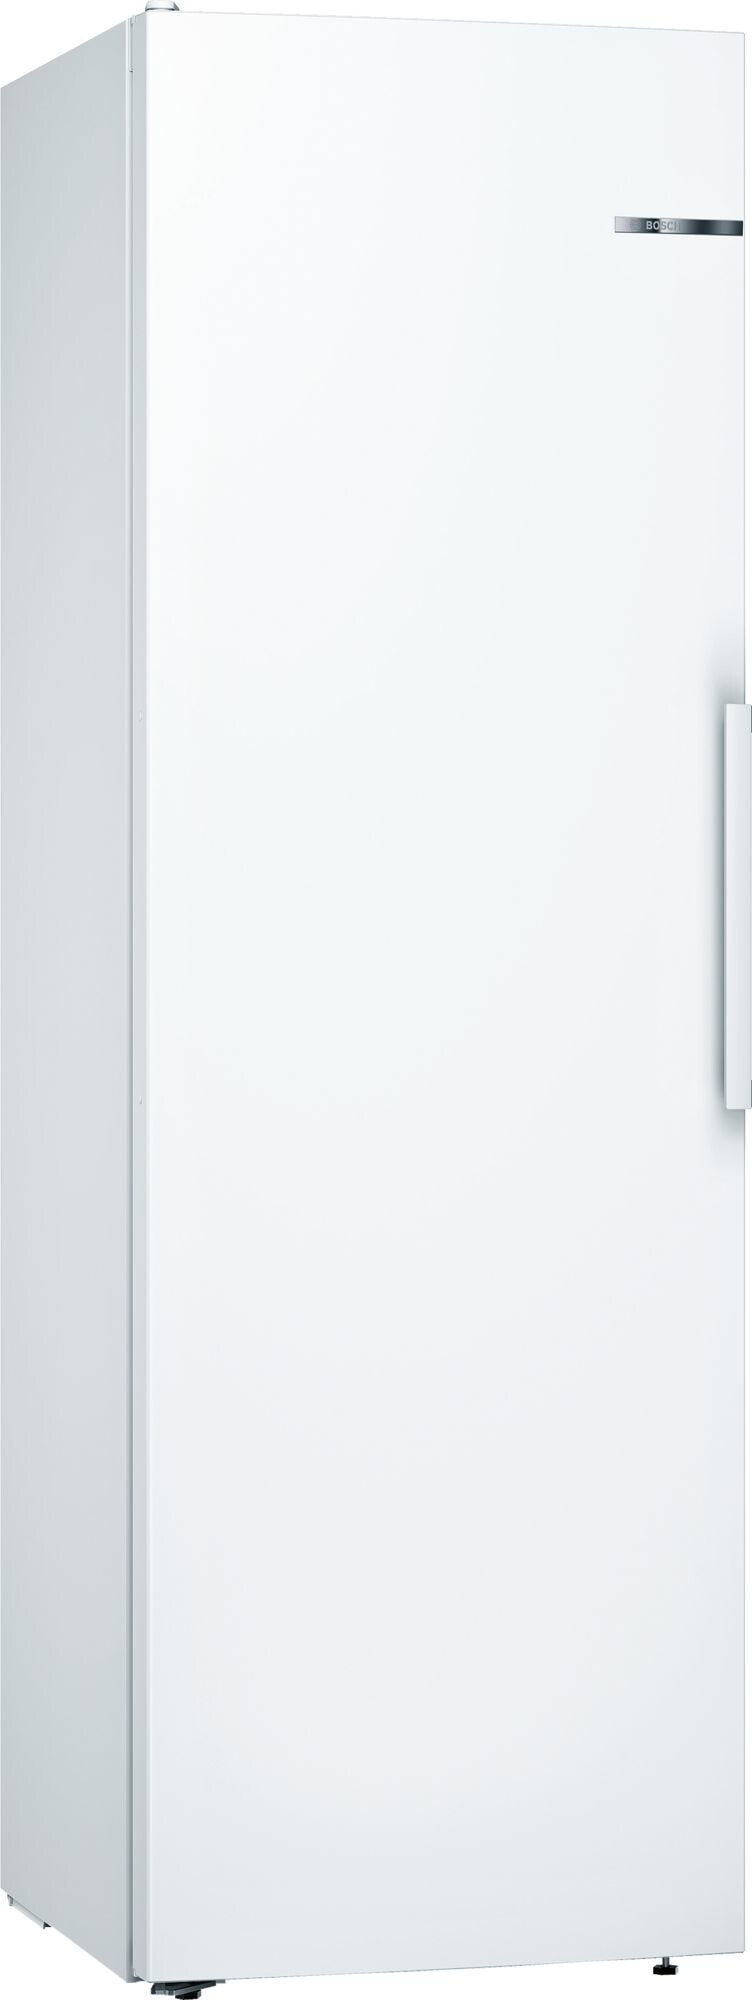 Bosch Serie 4 KSV36VWEP холодильник Отдельно стоящий Белый 346 L A++